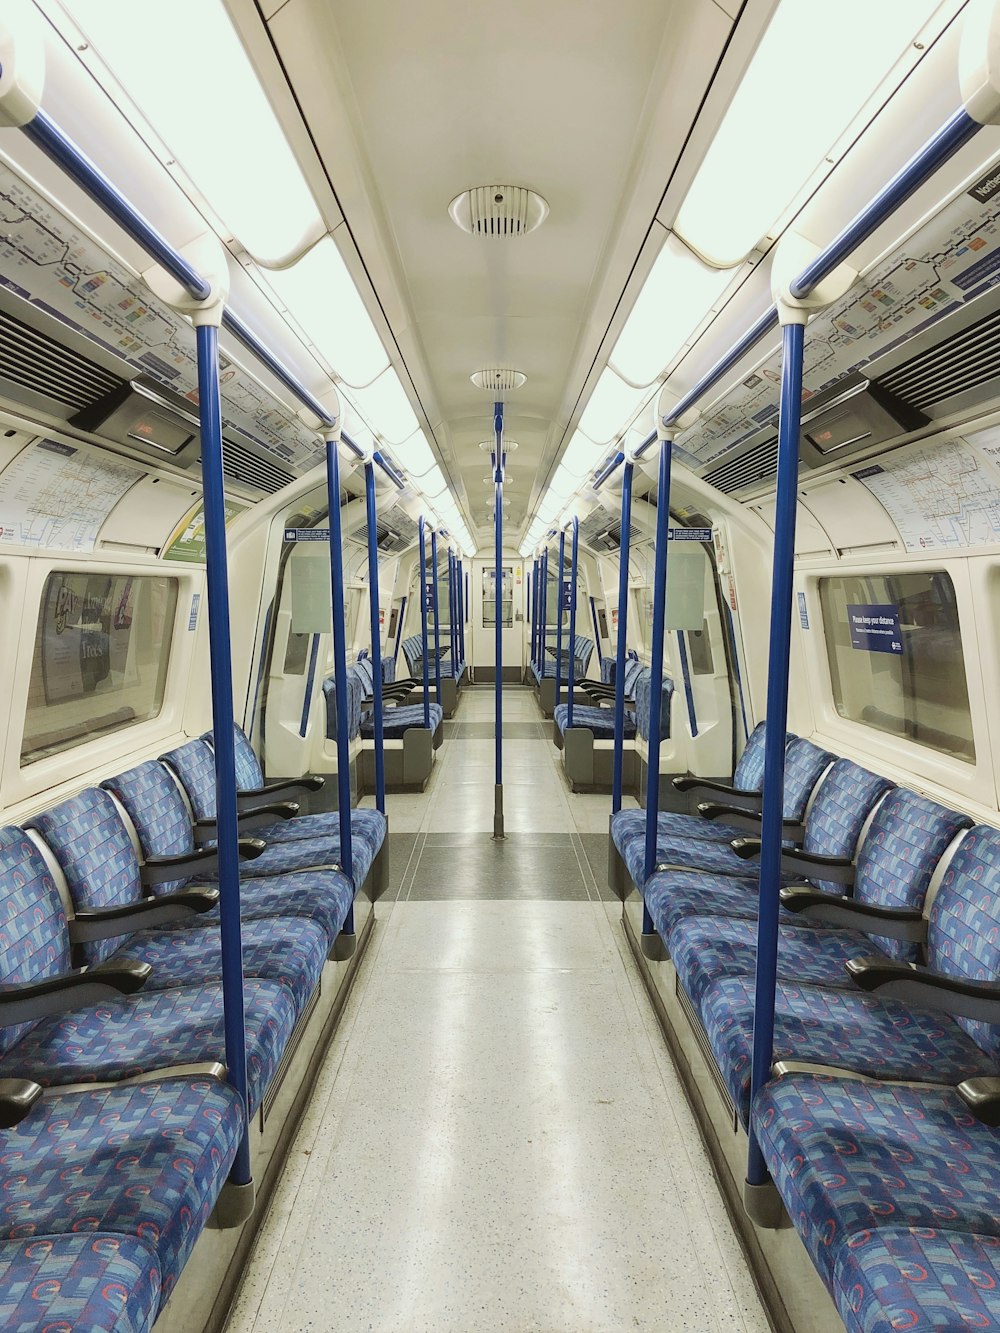 青と白の列車の座席